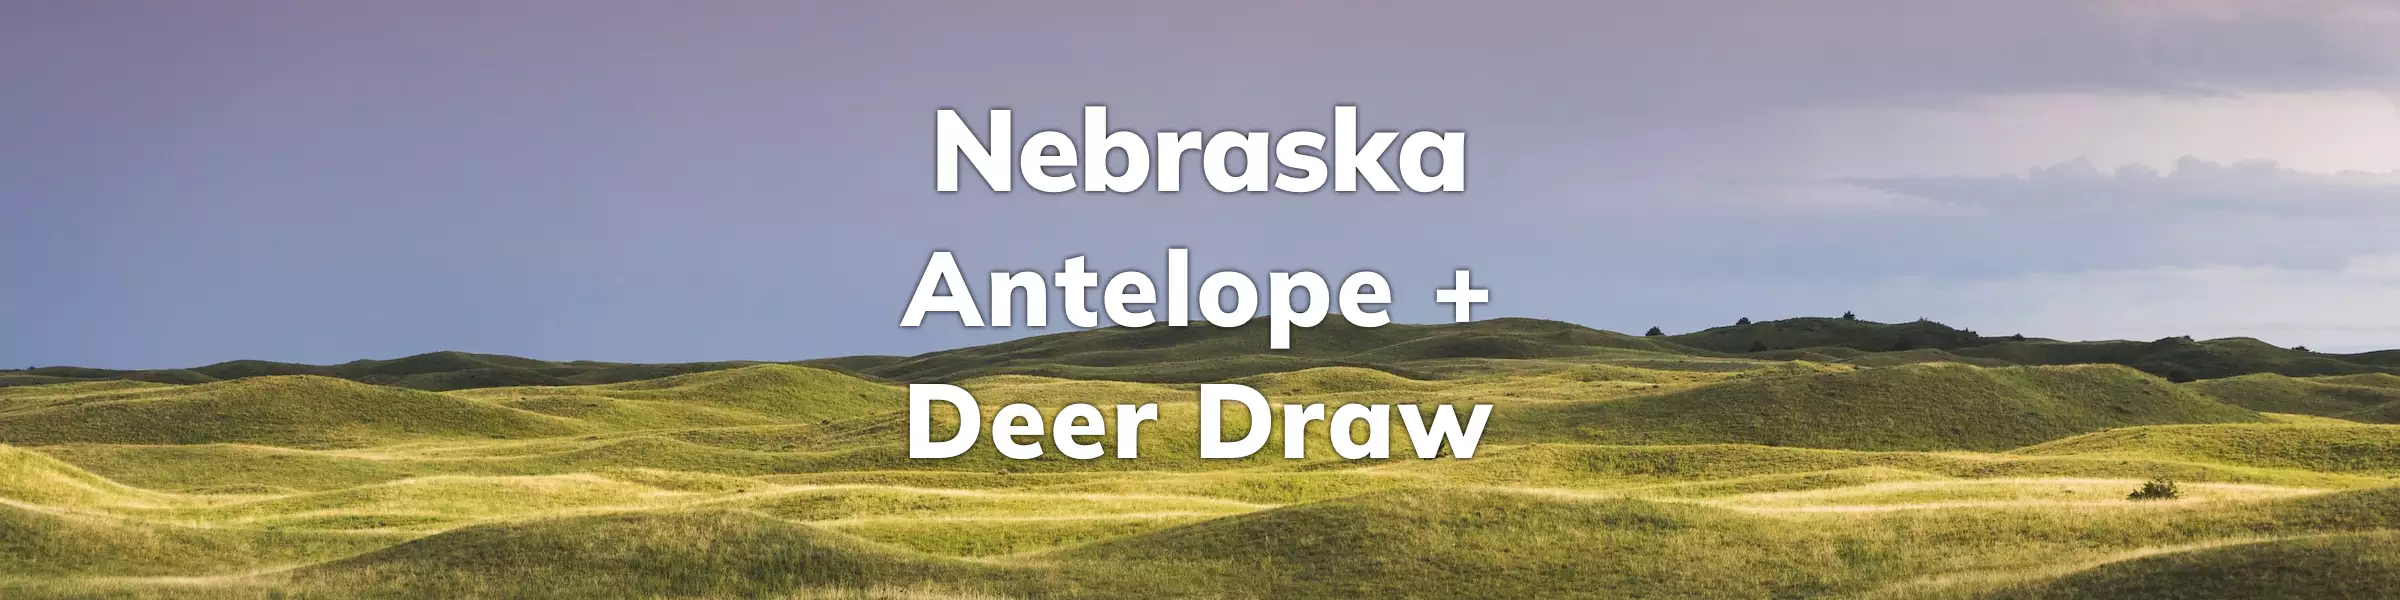 Nebraska Deer Antelope